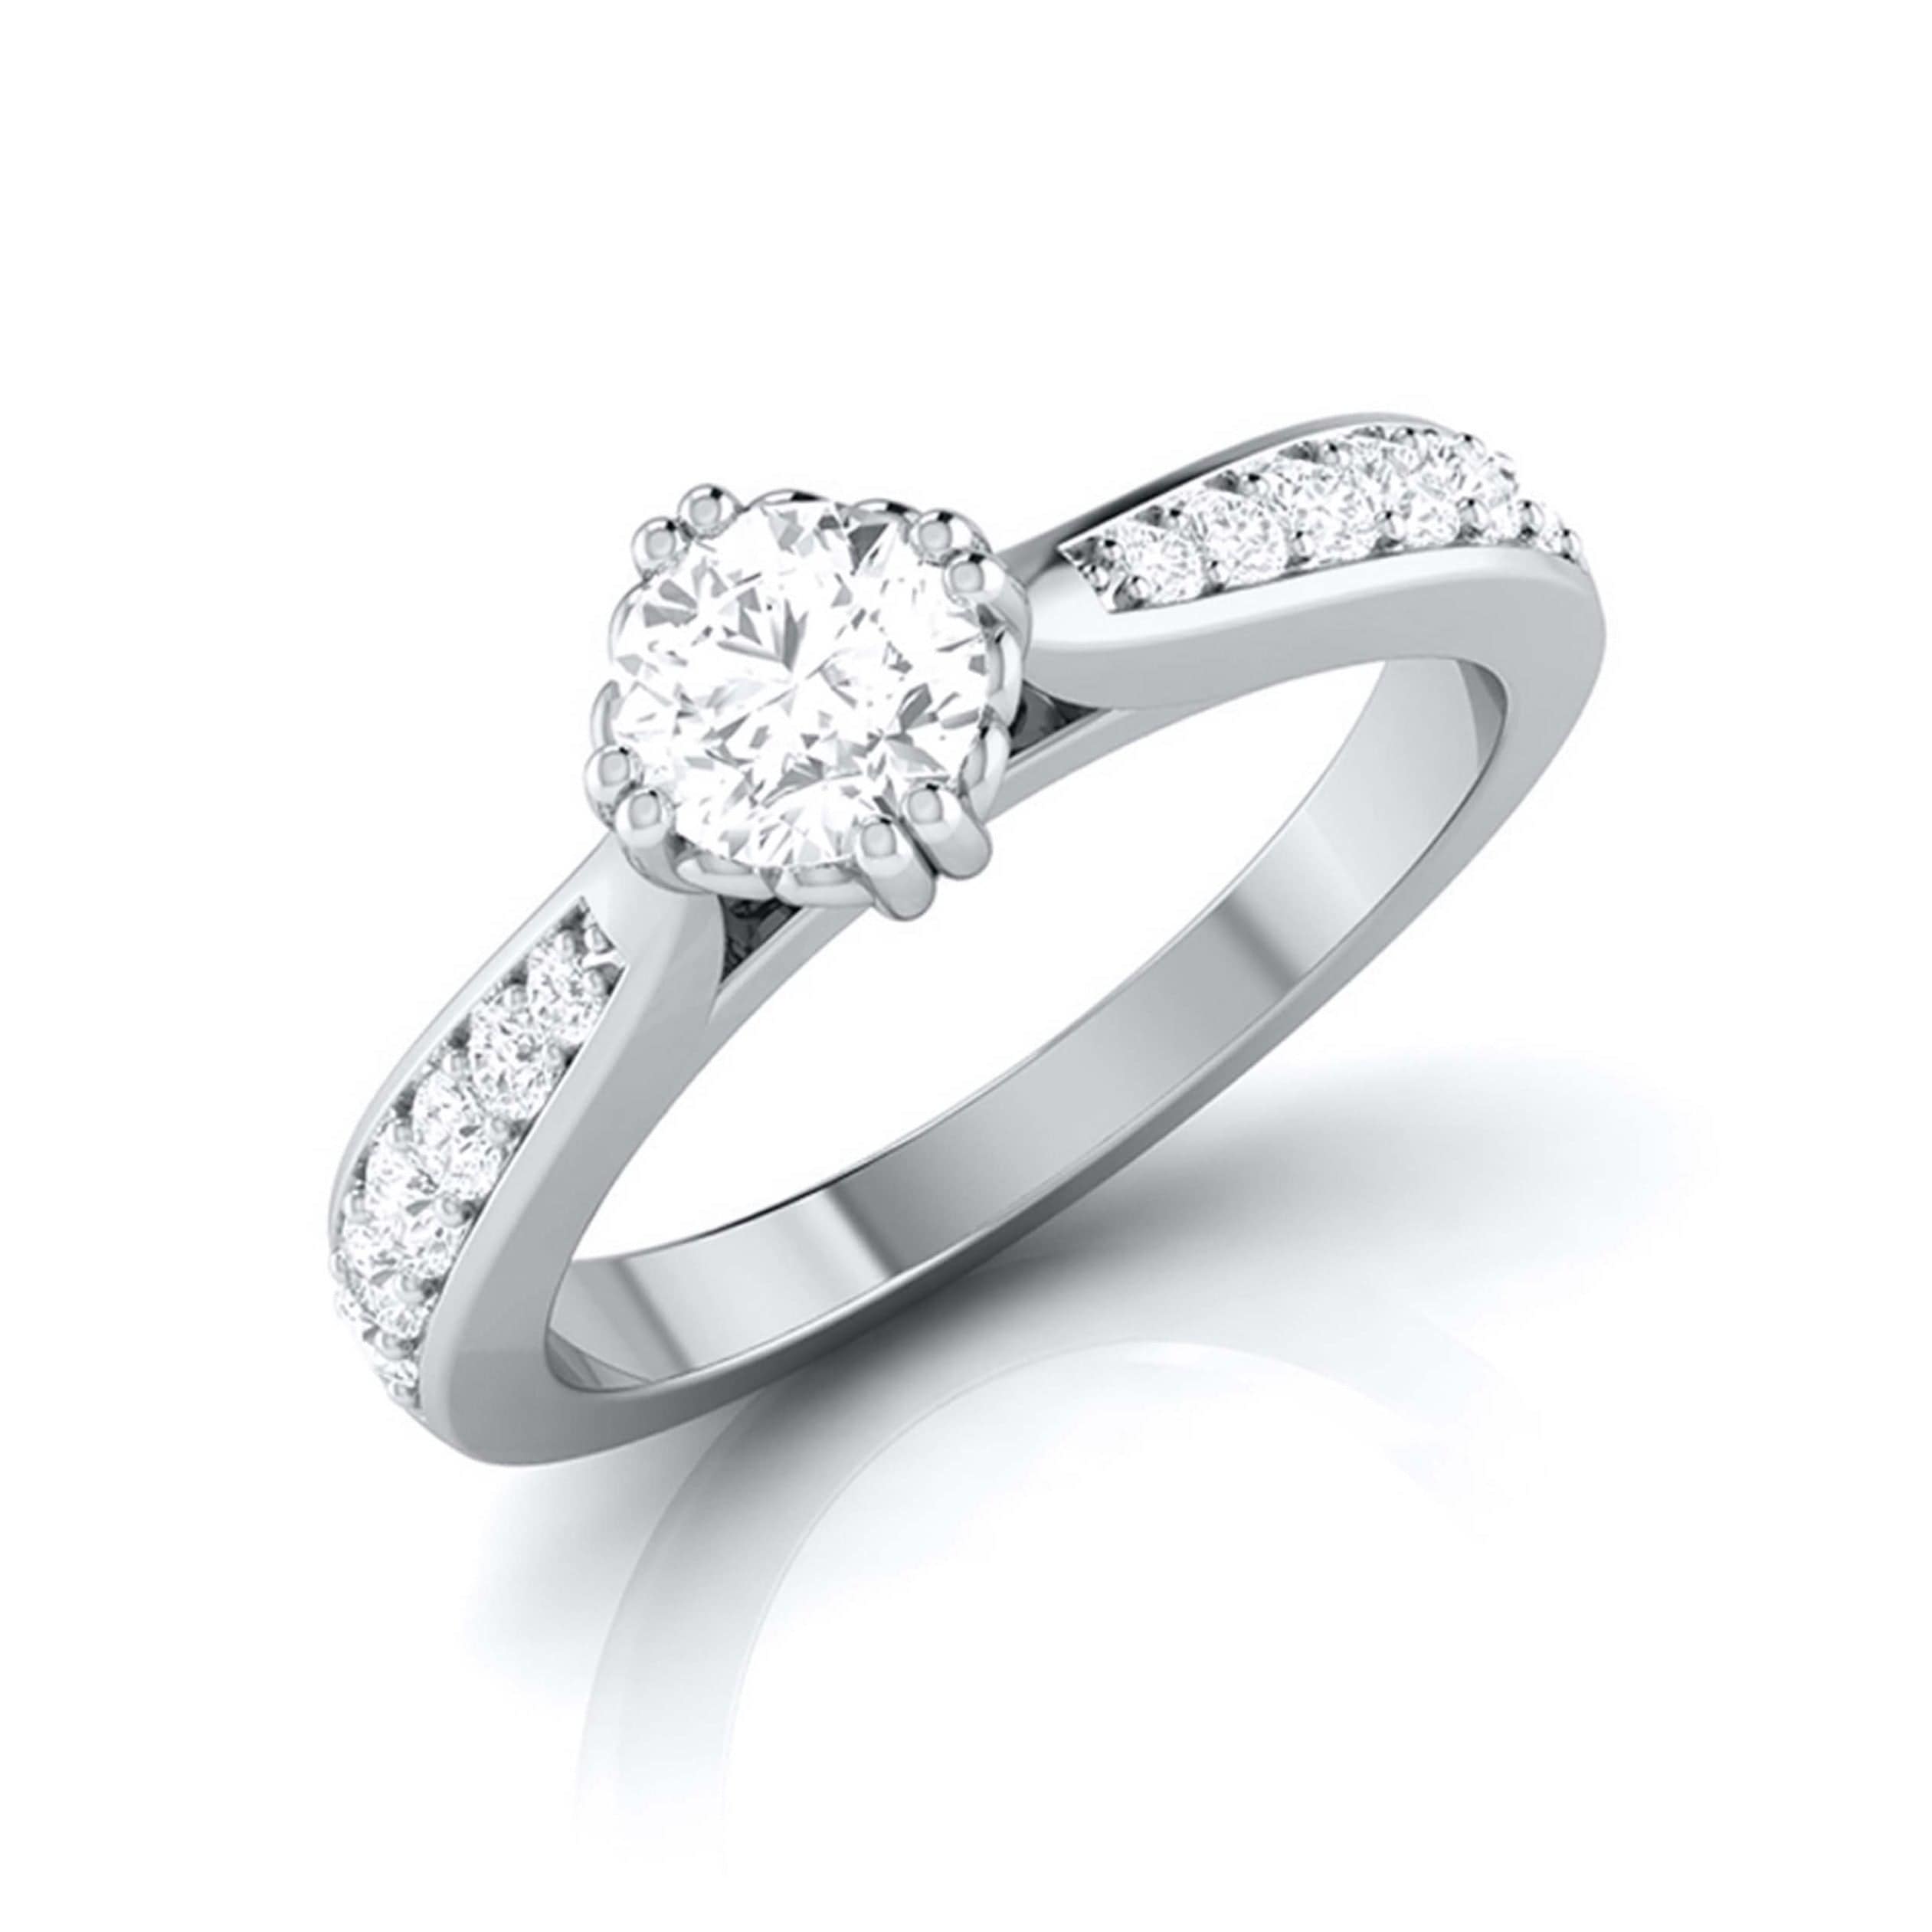 Buy Flashing Diamond Bridal Ring Set Online | CaratLane